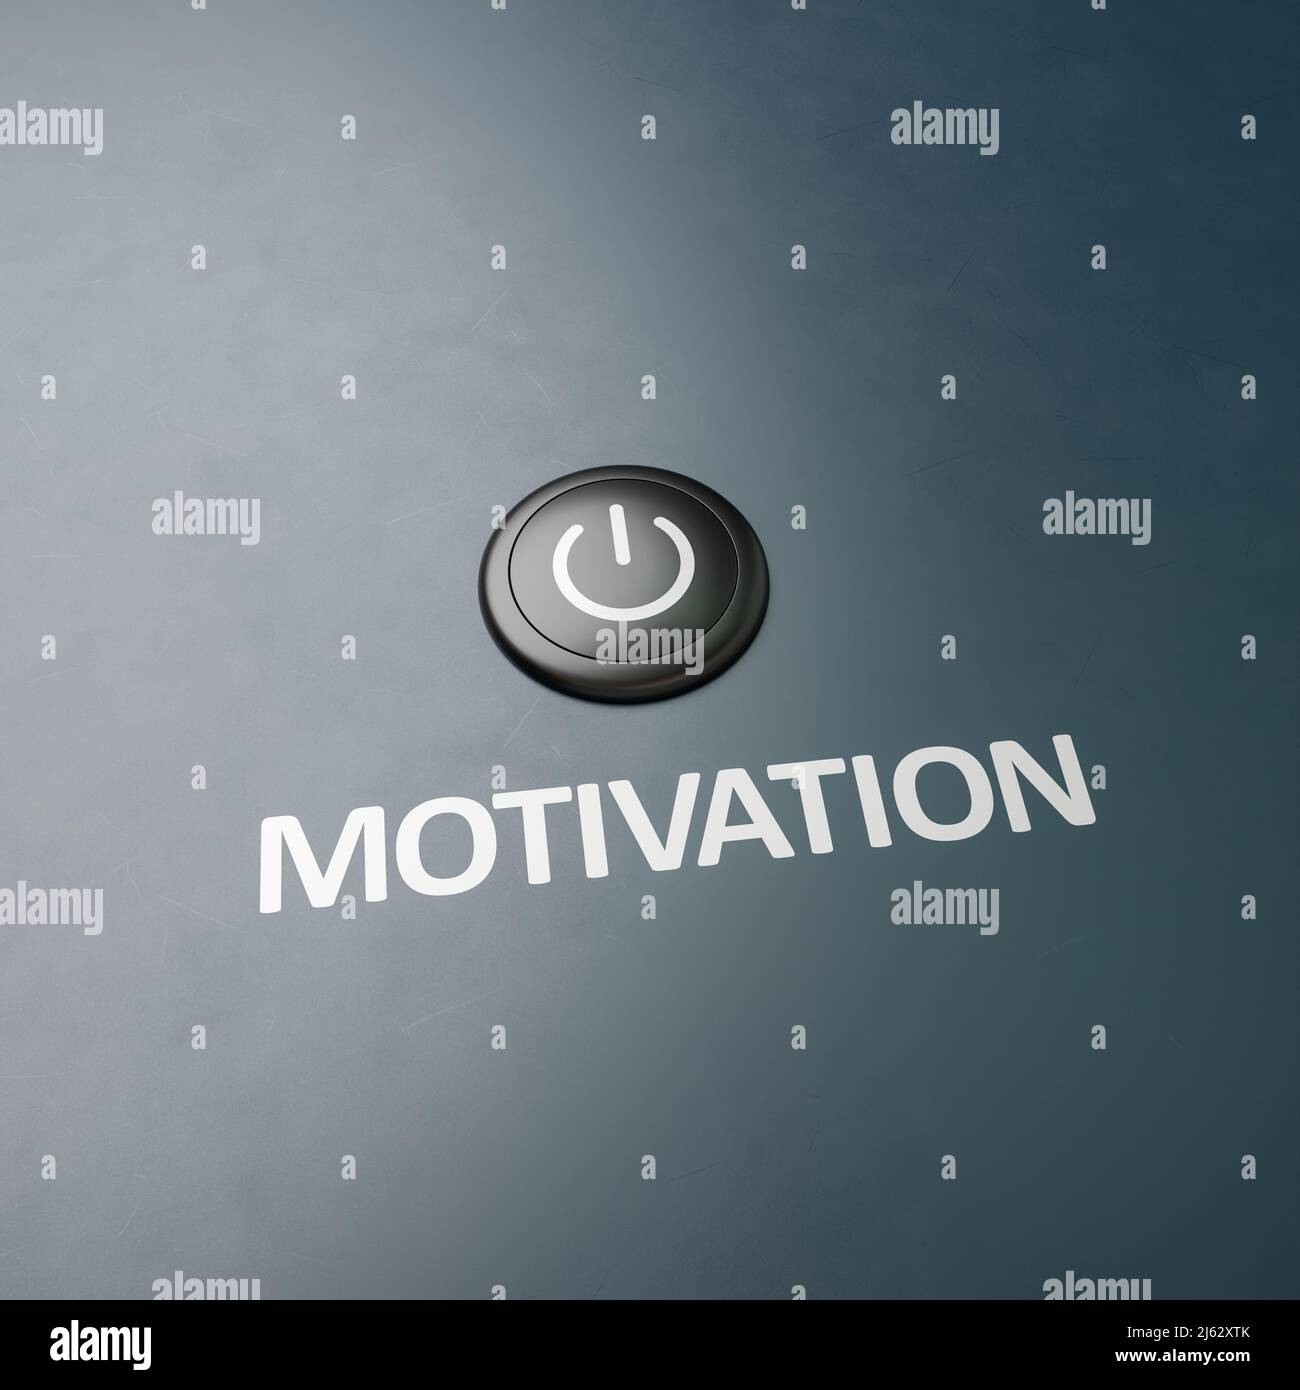 Schwarzer Knopf mit dem Wort 'Motivation' als Label - Konzept zur Umsetzung von Maßnahmen zum Motivationswechsel. Platz zum besseren Zuschneiden kopieren Stockfoto